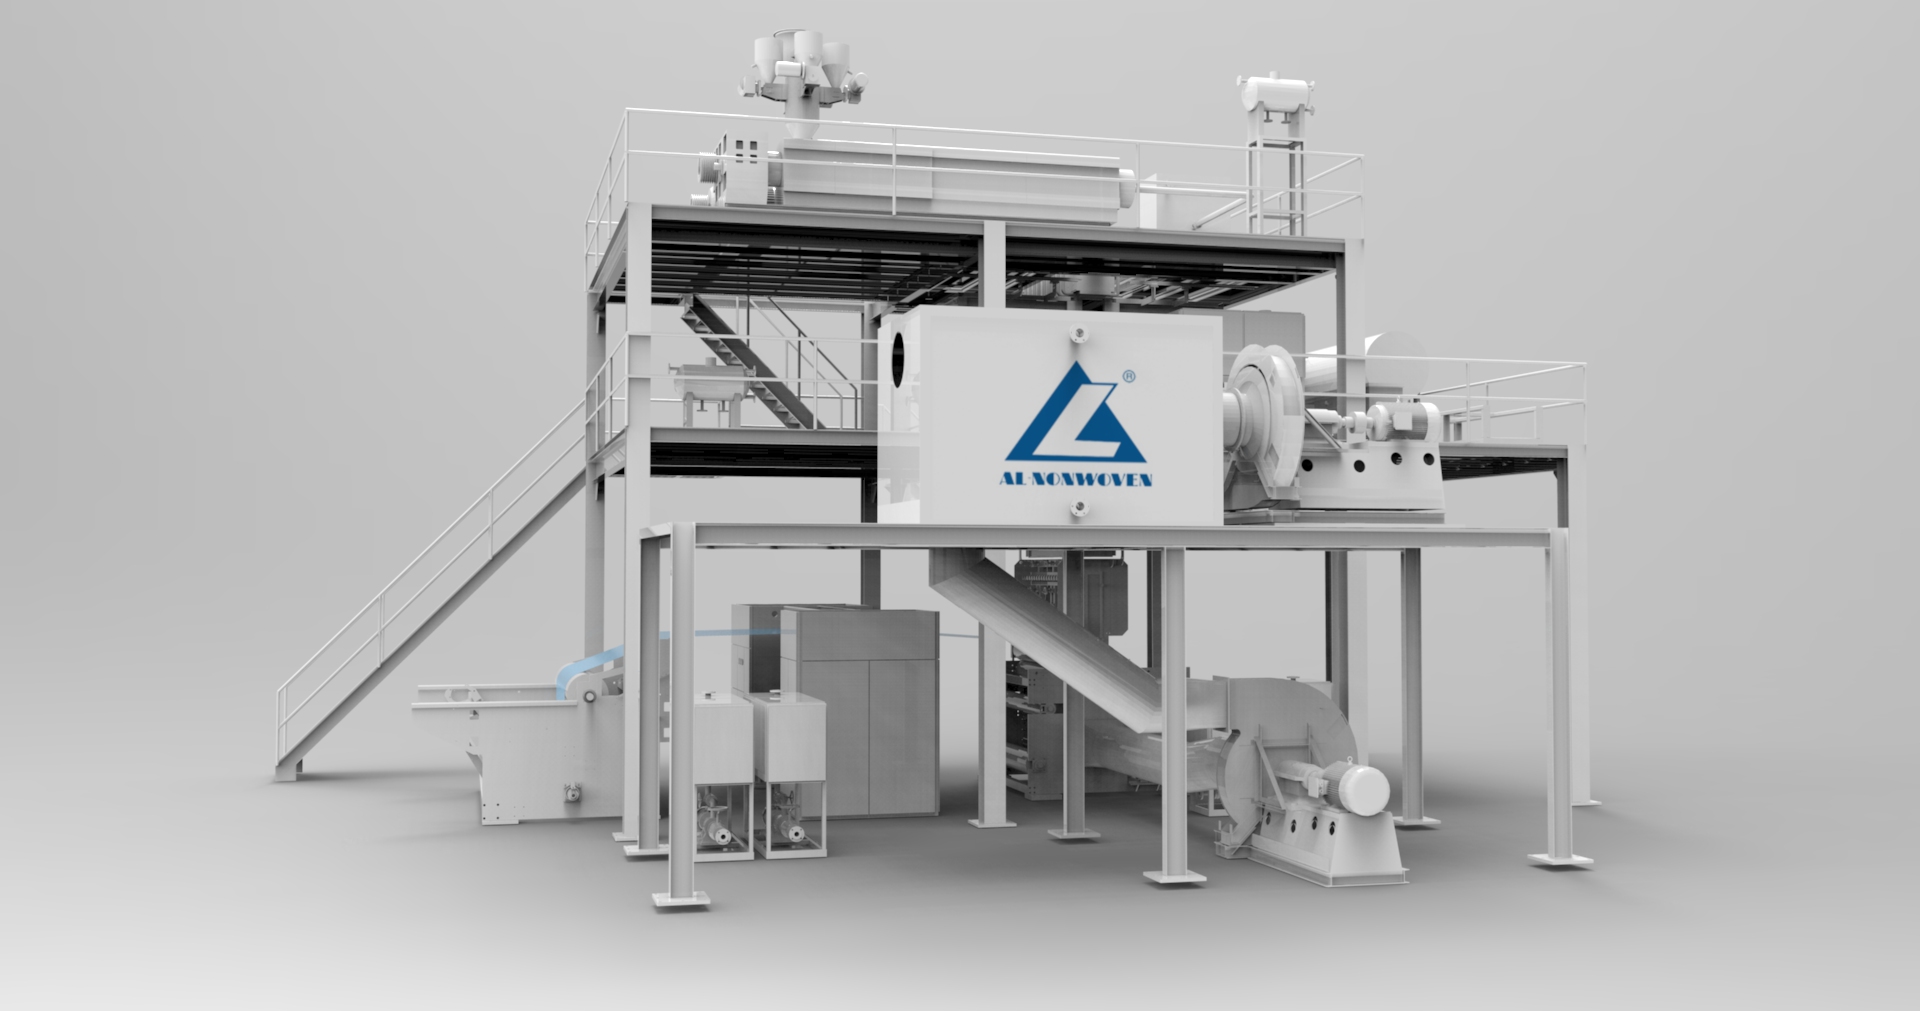 ALFN--3200mm pp Spunbond Nonwoven Making Machine 